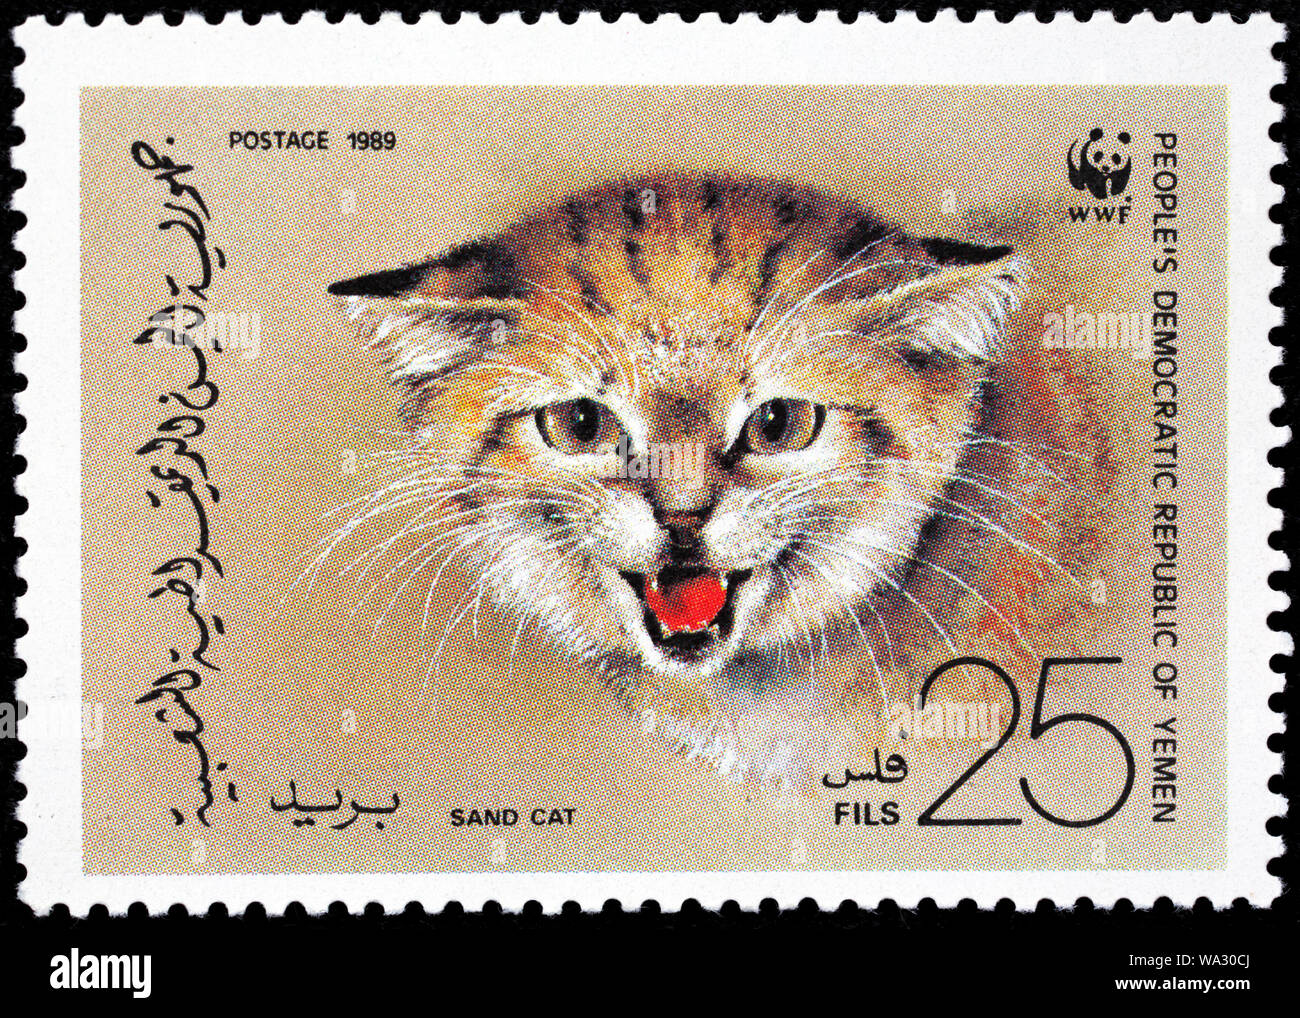 Dune di sabbia cat, Felis margarita, francobollo, Yemen, 1989 Foto Stock